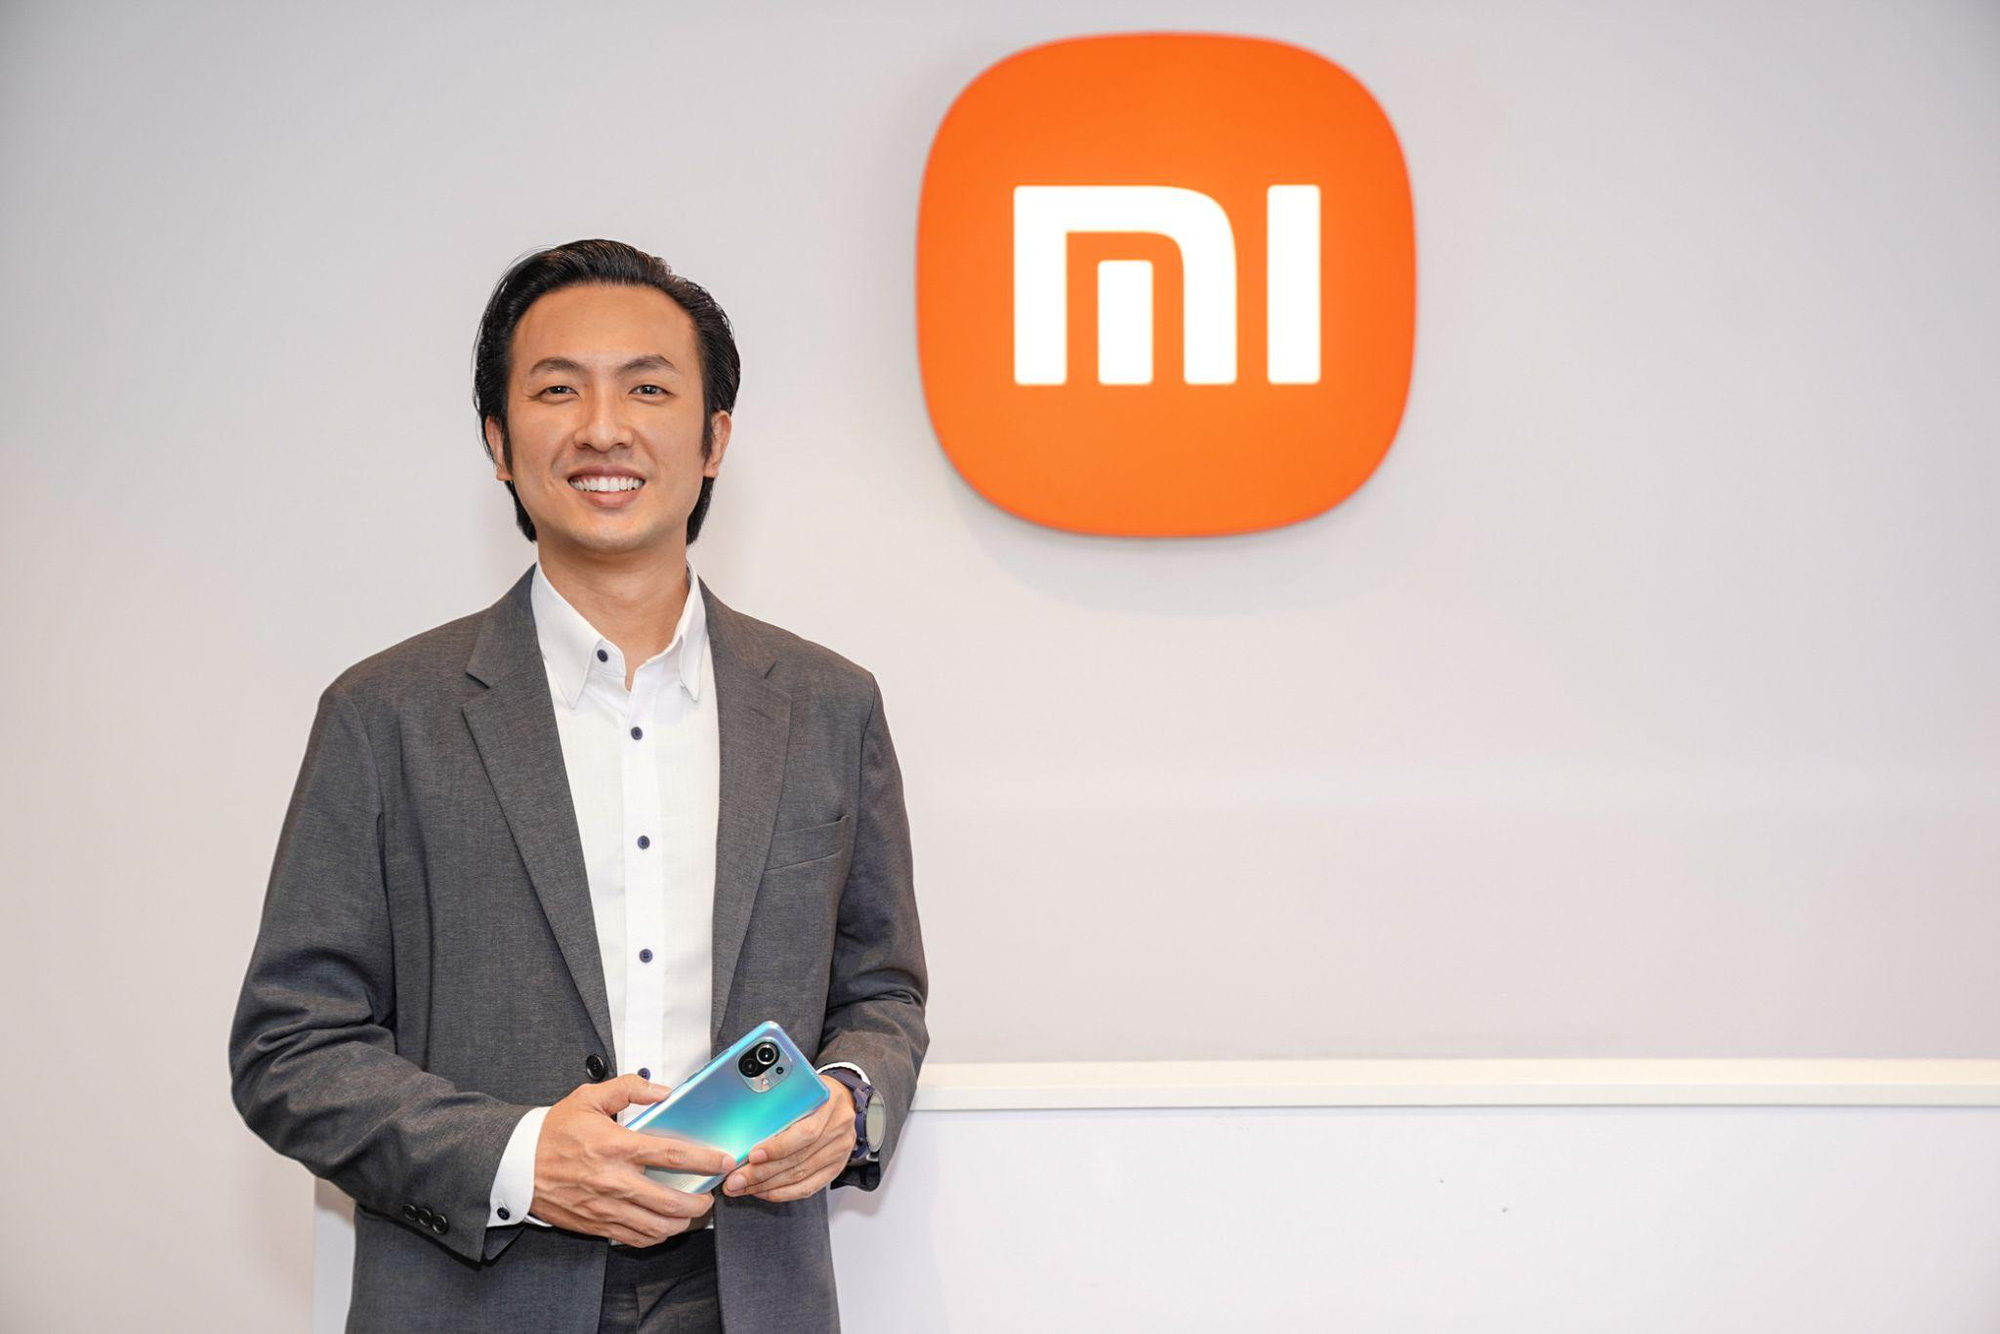 Giám đốc Xiaomi Đông Nam Á - Tiếp tục tập trung vào giá trị cốt lõi là smartphone và AIOT - Trang Chủ